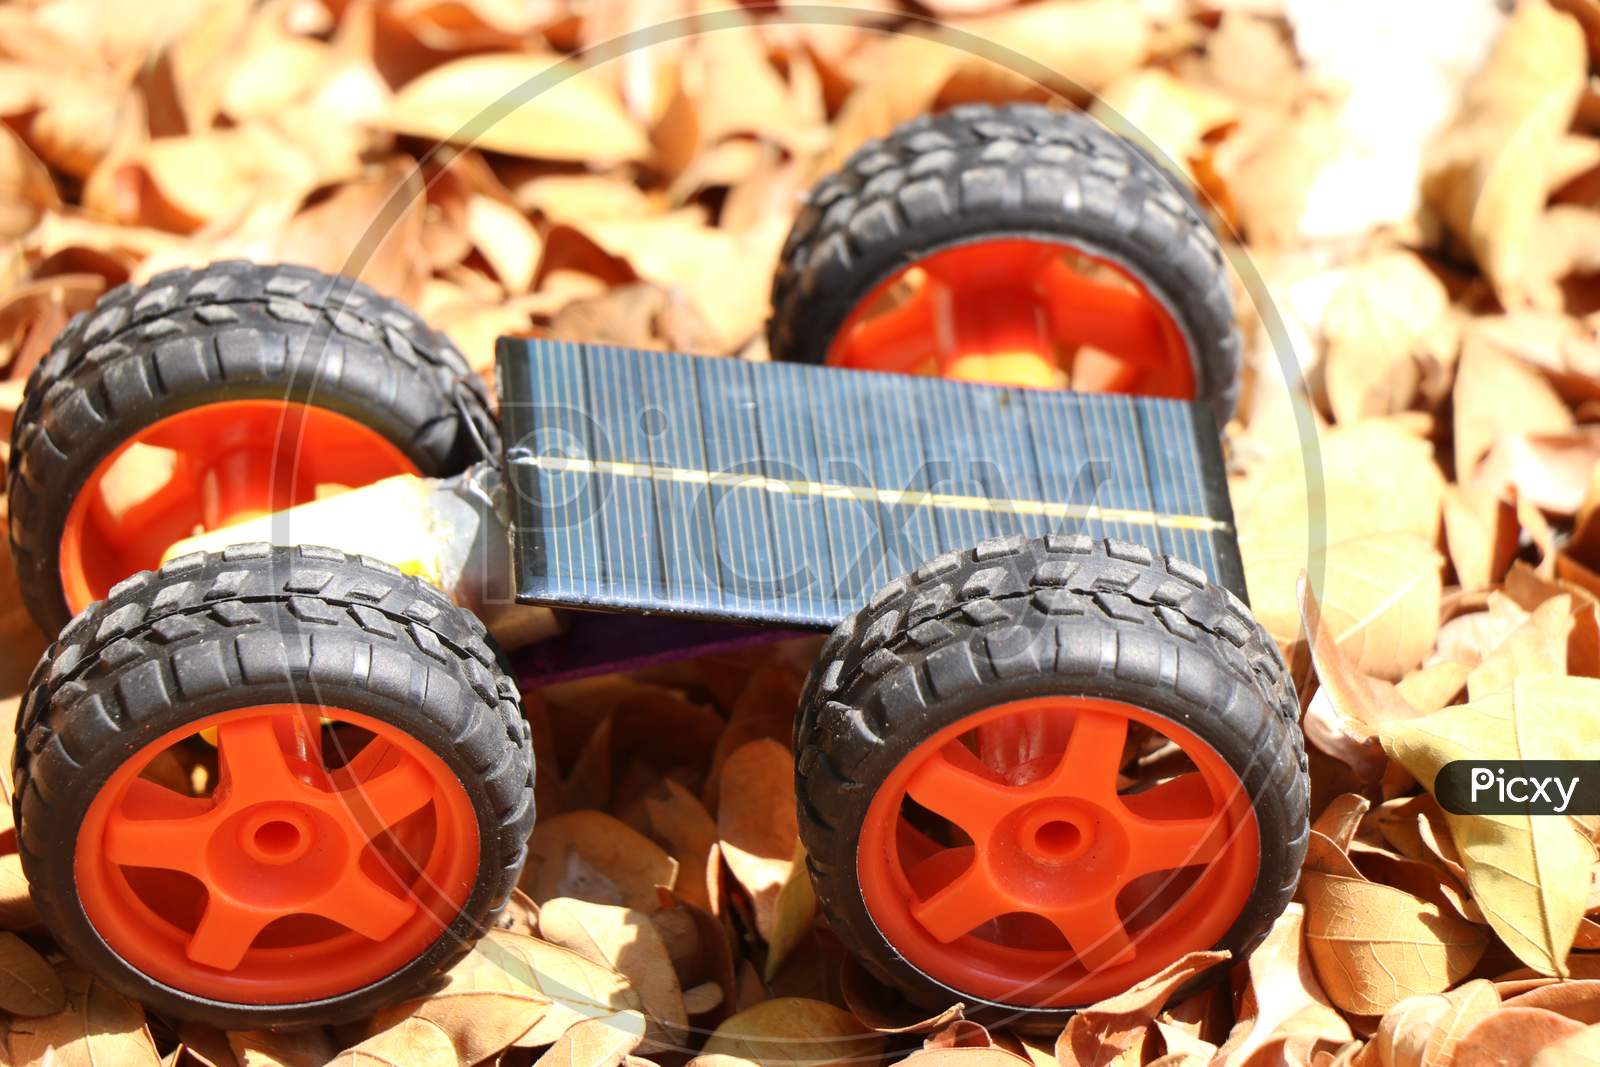 Solar Powered Toy Car With Big Wheels